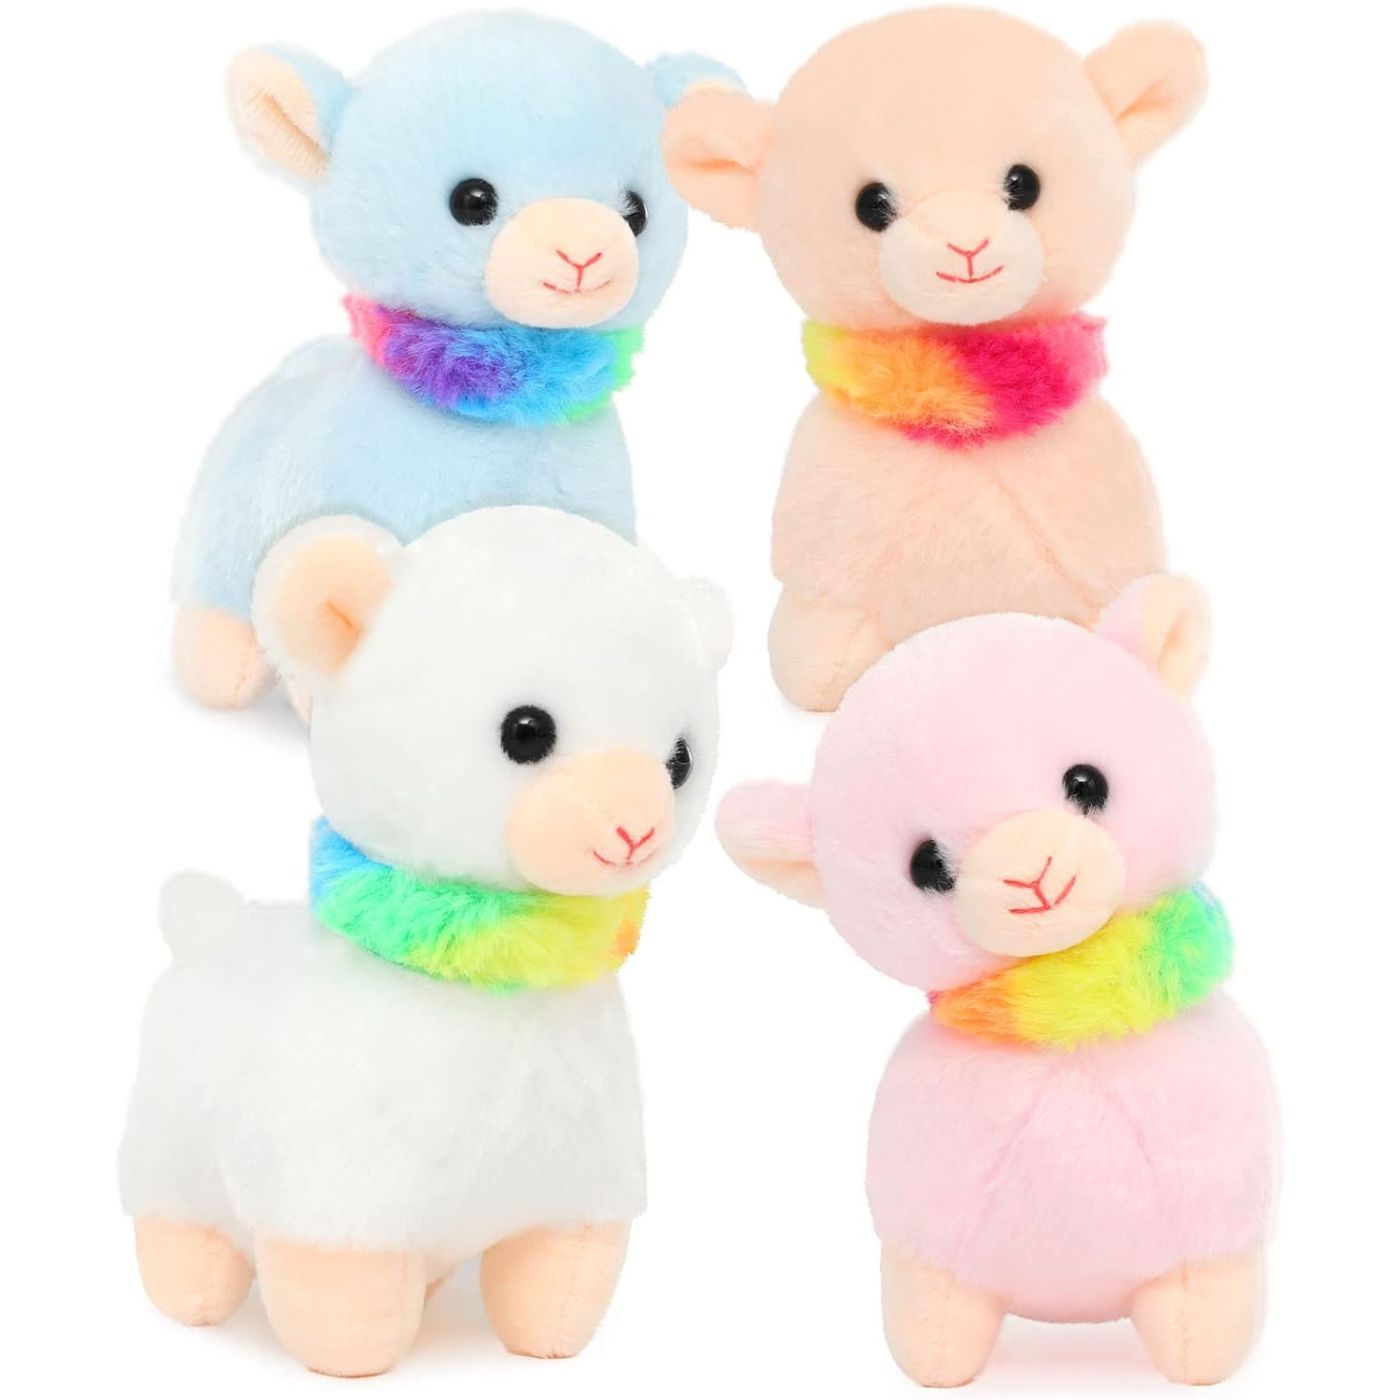 Alpaca Plush Toy Set, 14.5 Inches - MorisMos Stuffed Toys